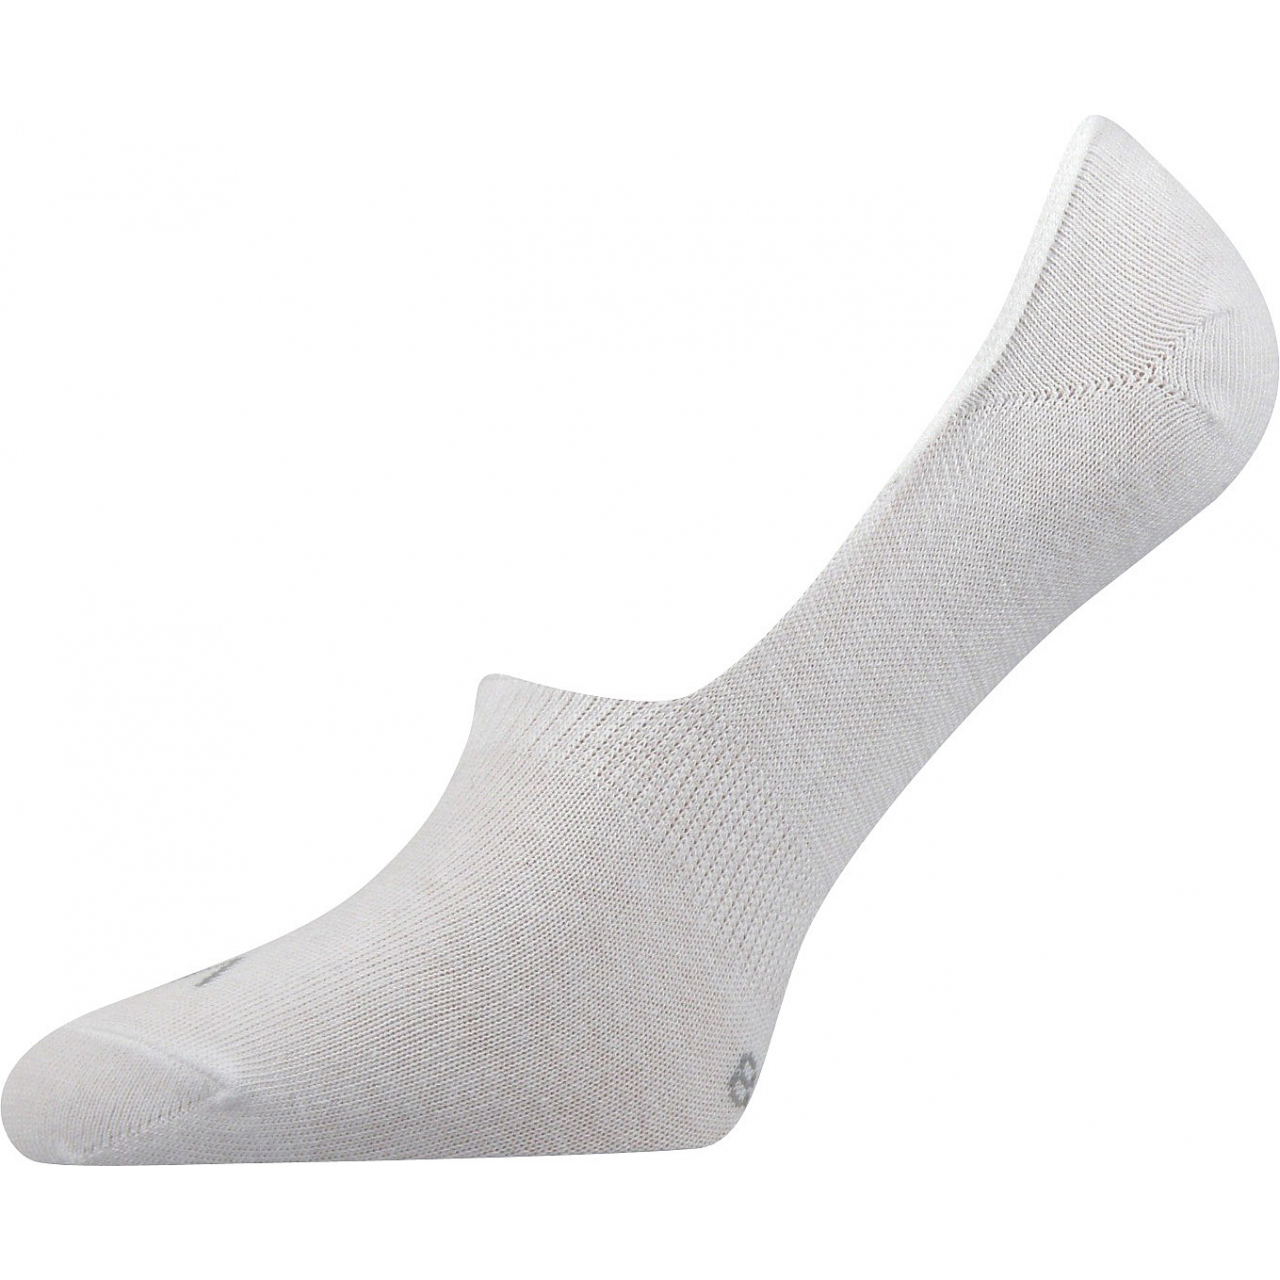 Ponožky unisex Voxx Verti - bílé, 35-38